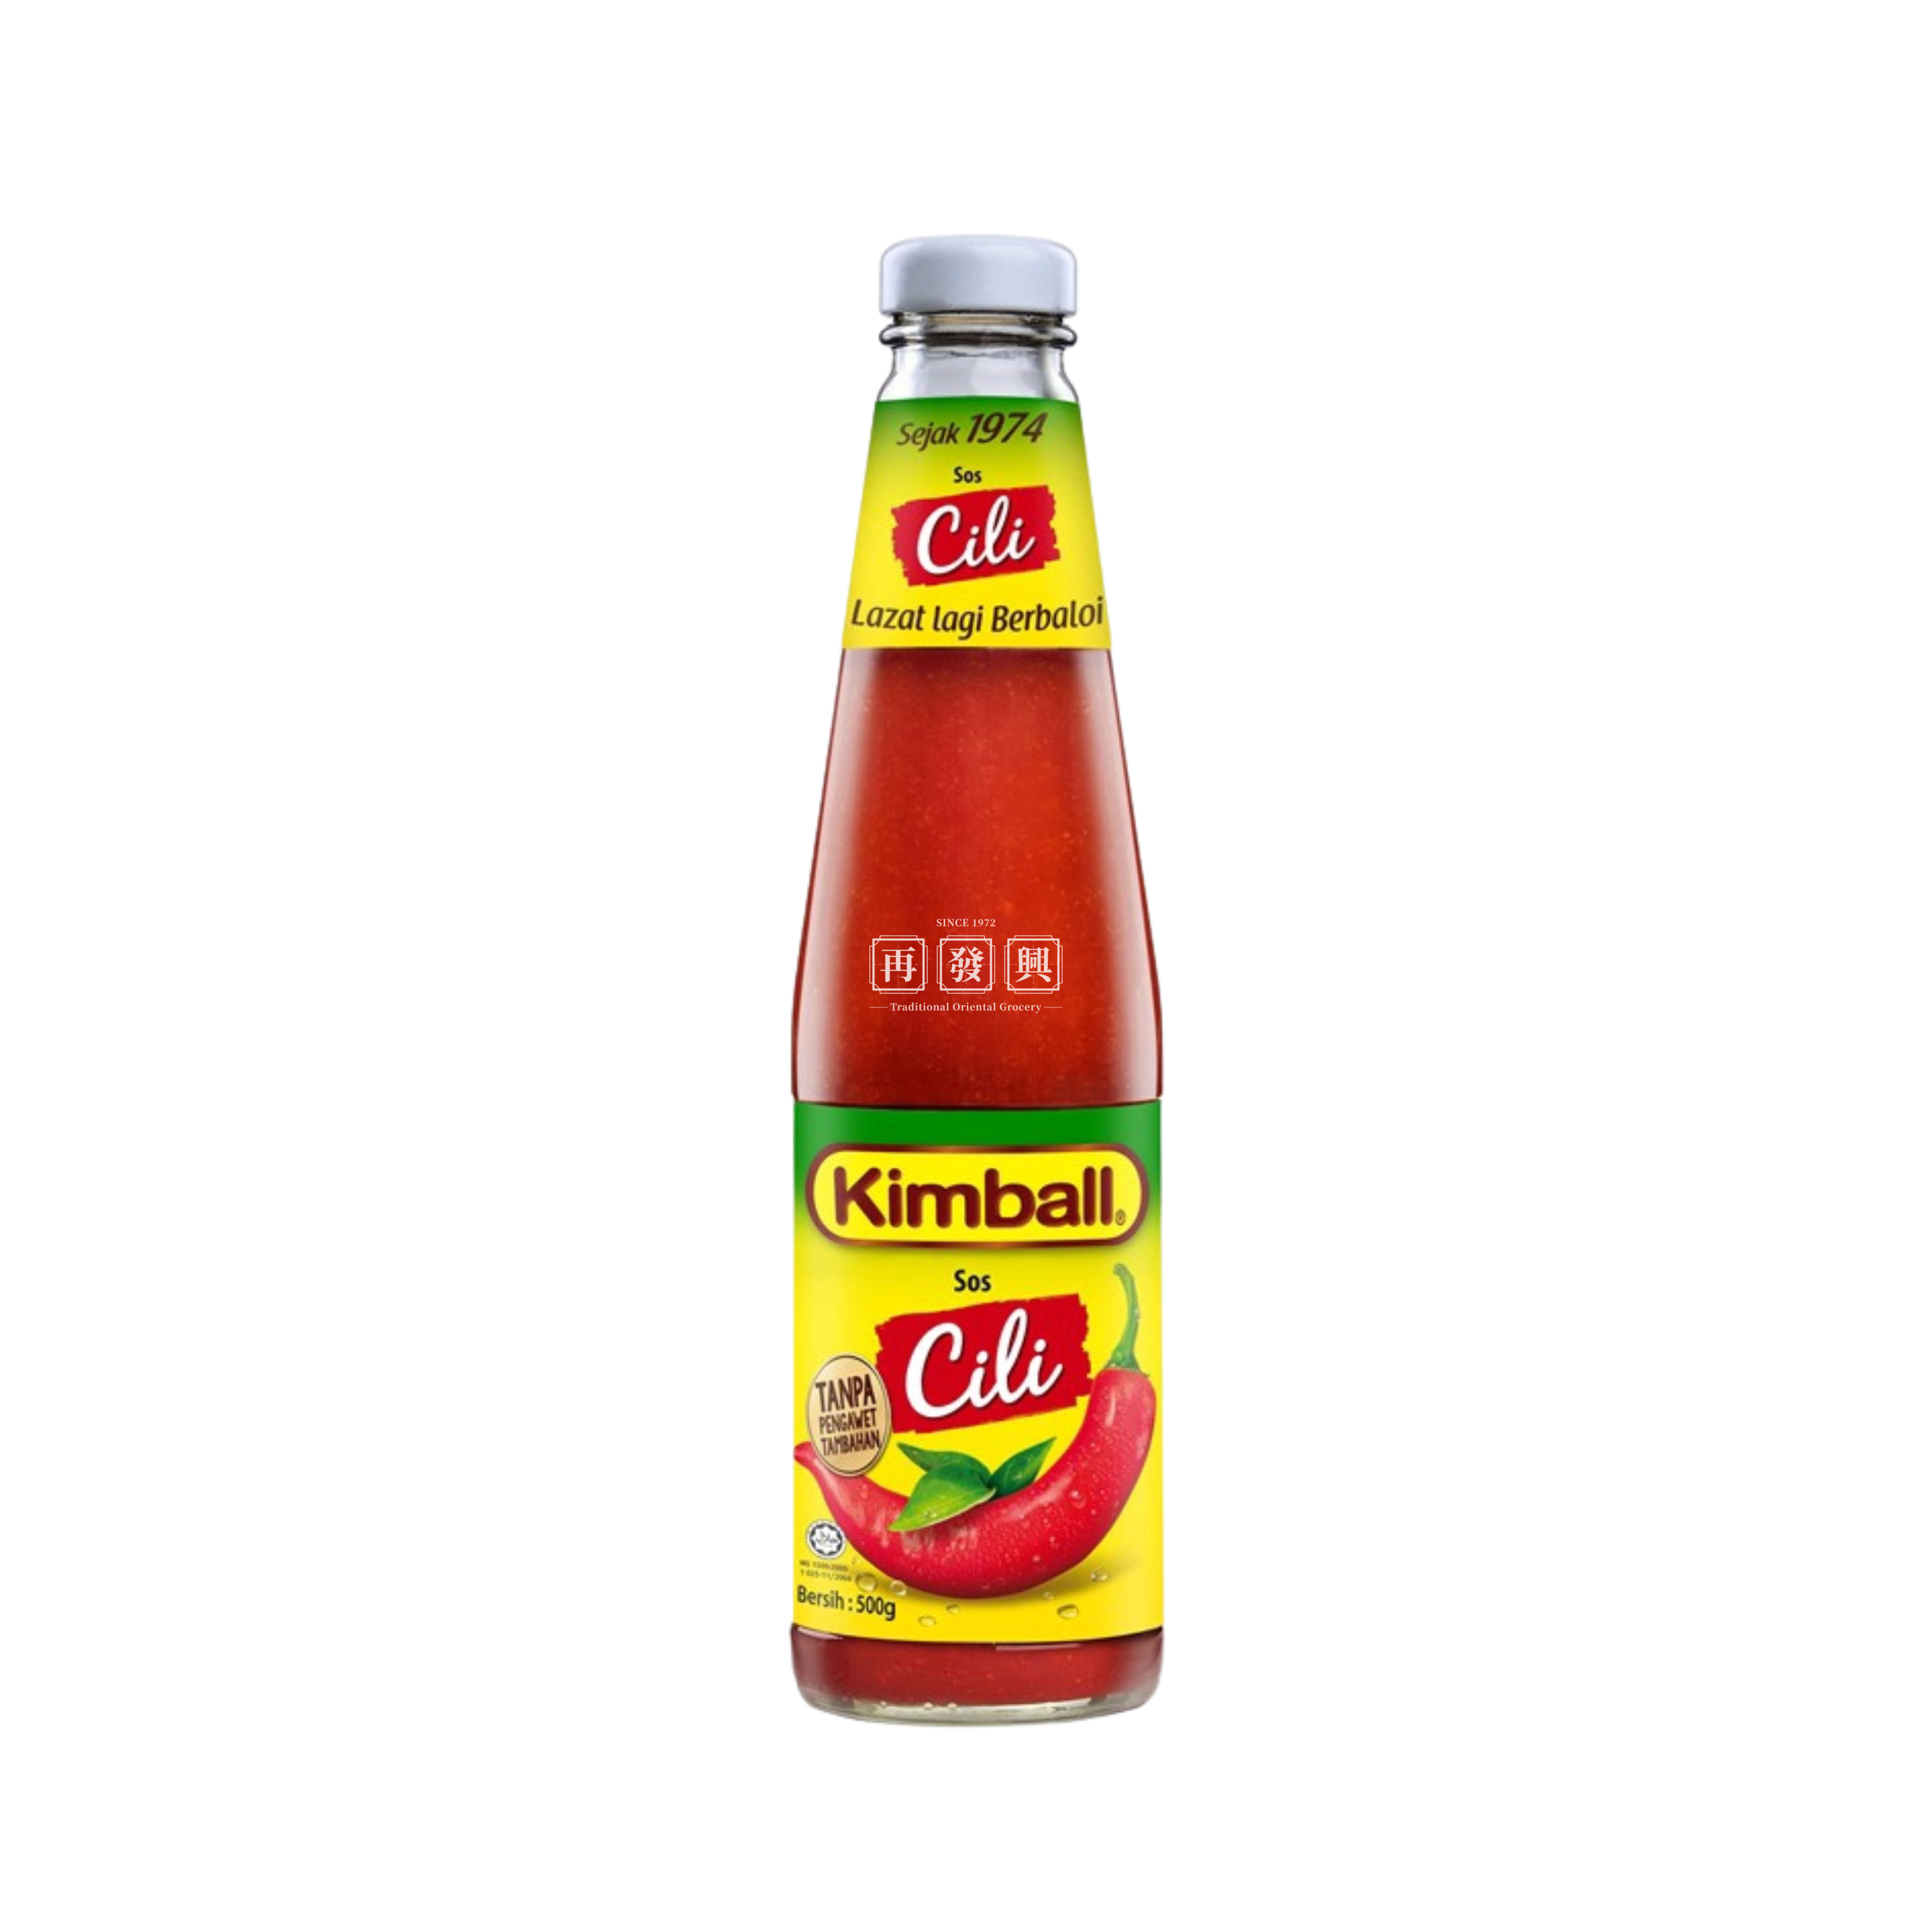 Kimball Sos Cili (Chili Sauce) 500g